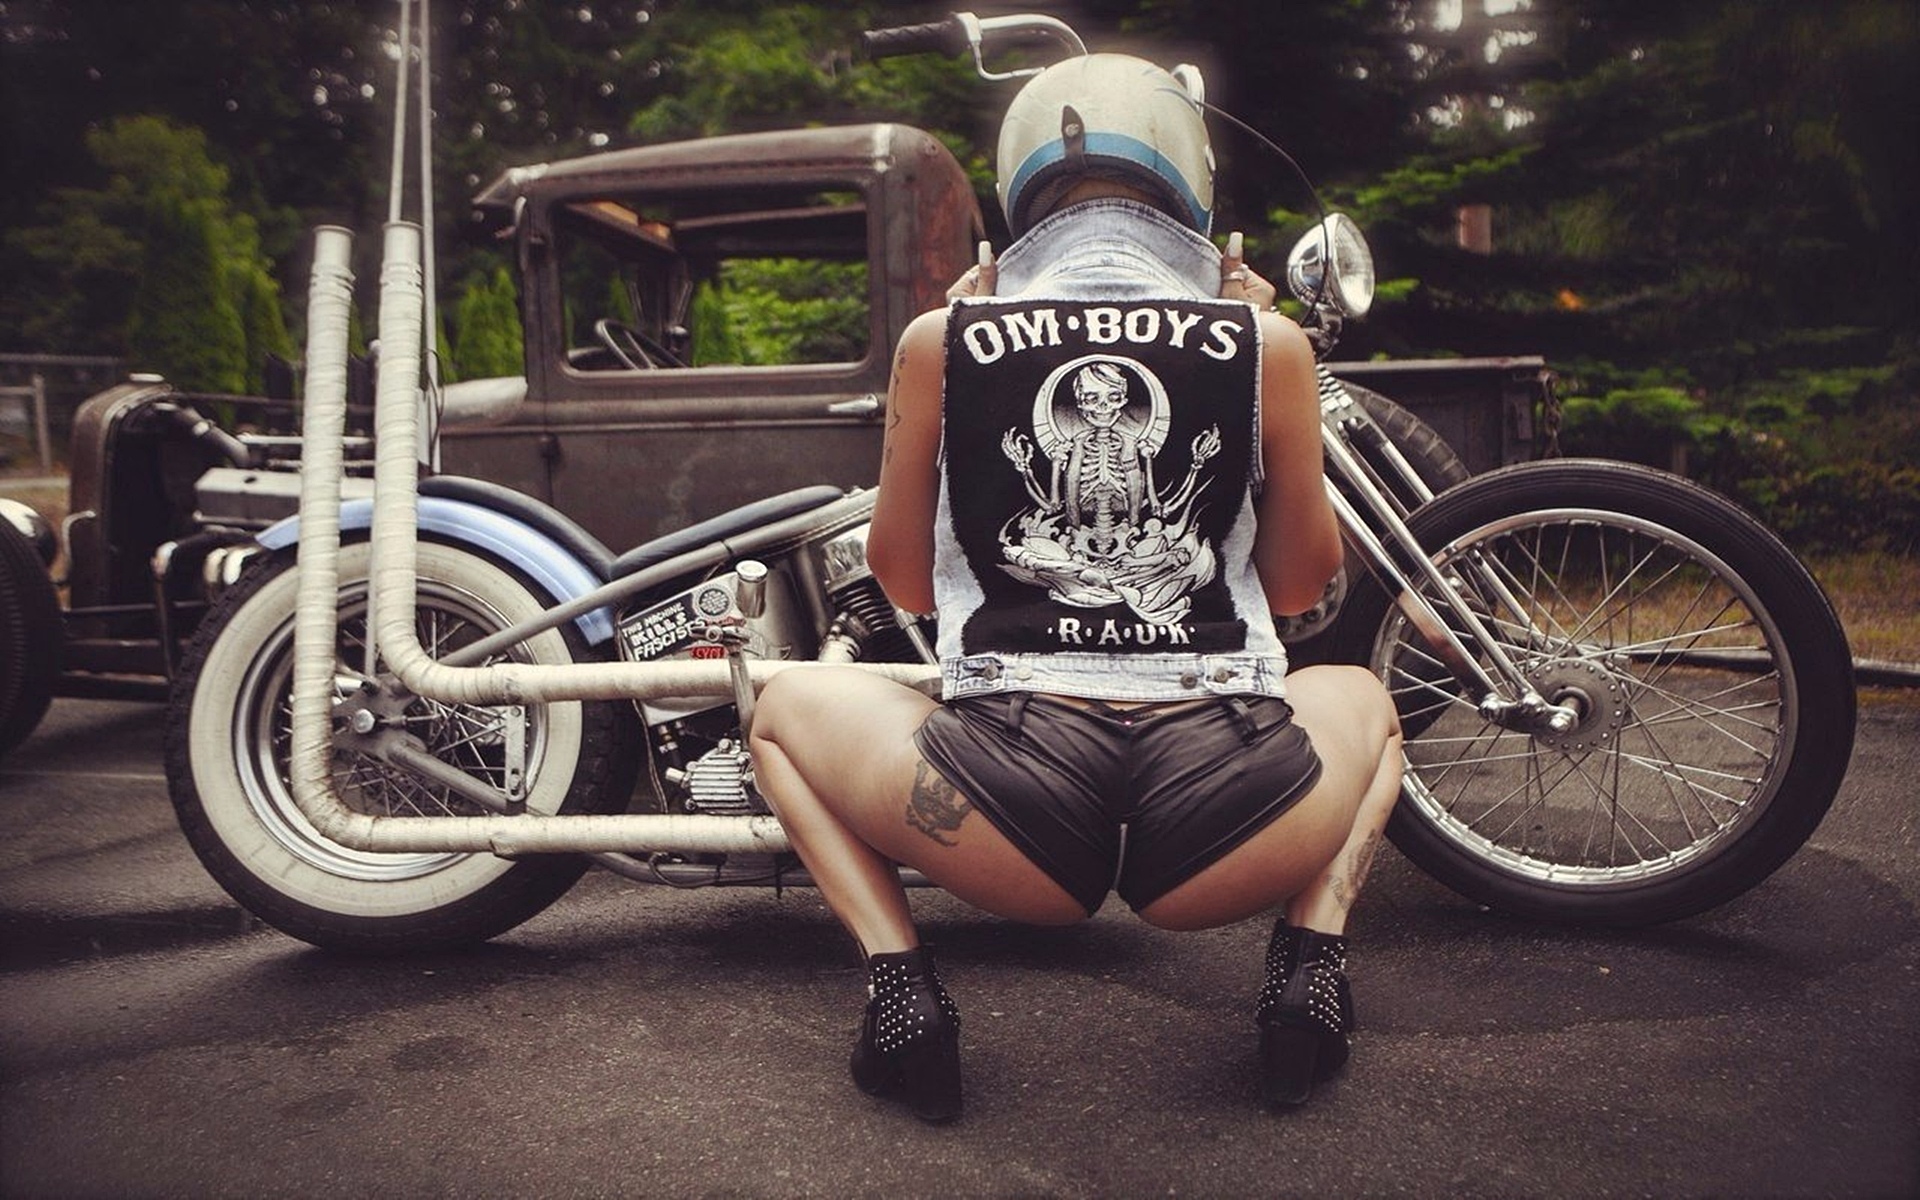 Татуированные девки приехали в мотоклуб за жаркой групповушкой с качками